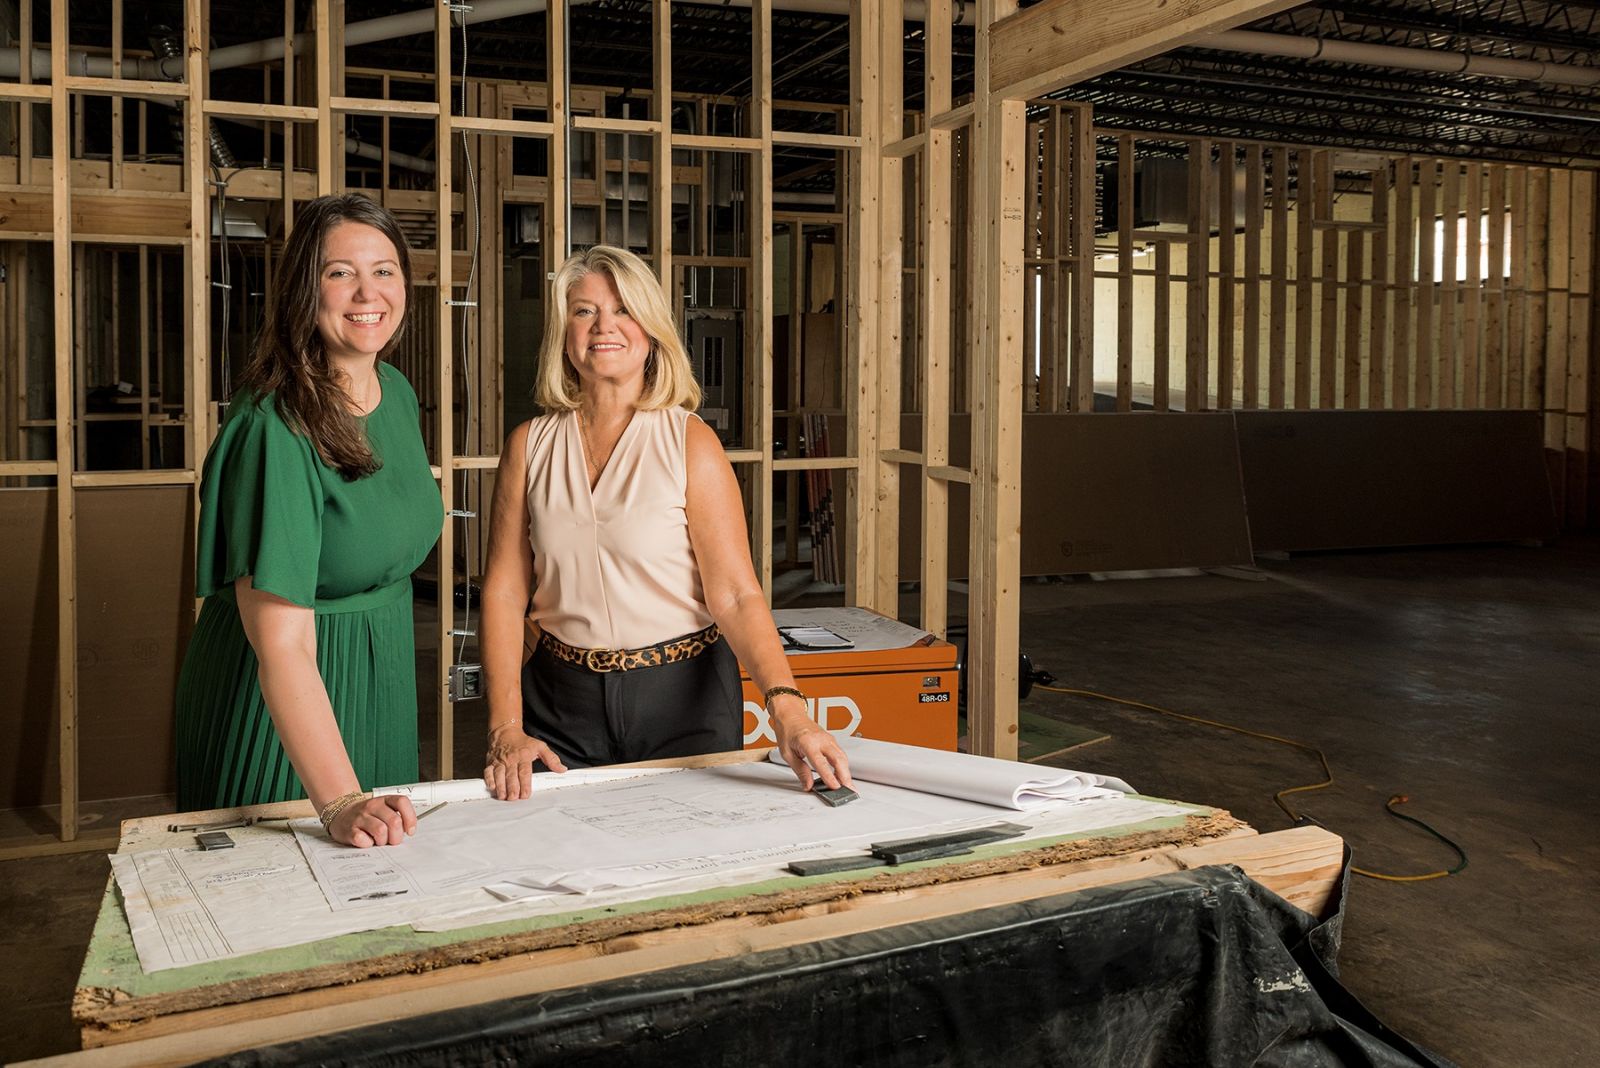 Stouffer and Mastny examine renovation blueprints. (Photo/Provided)